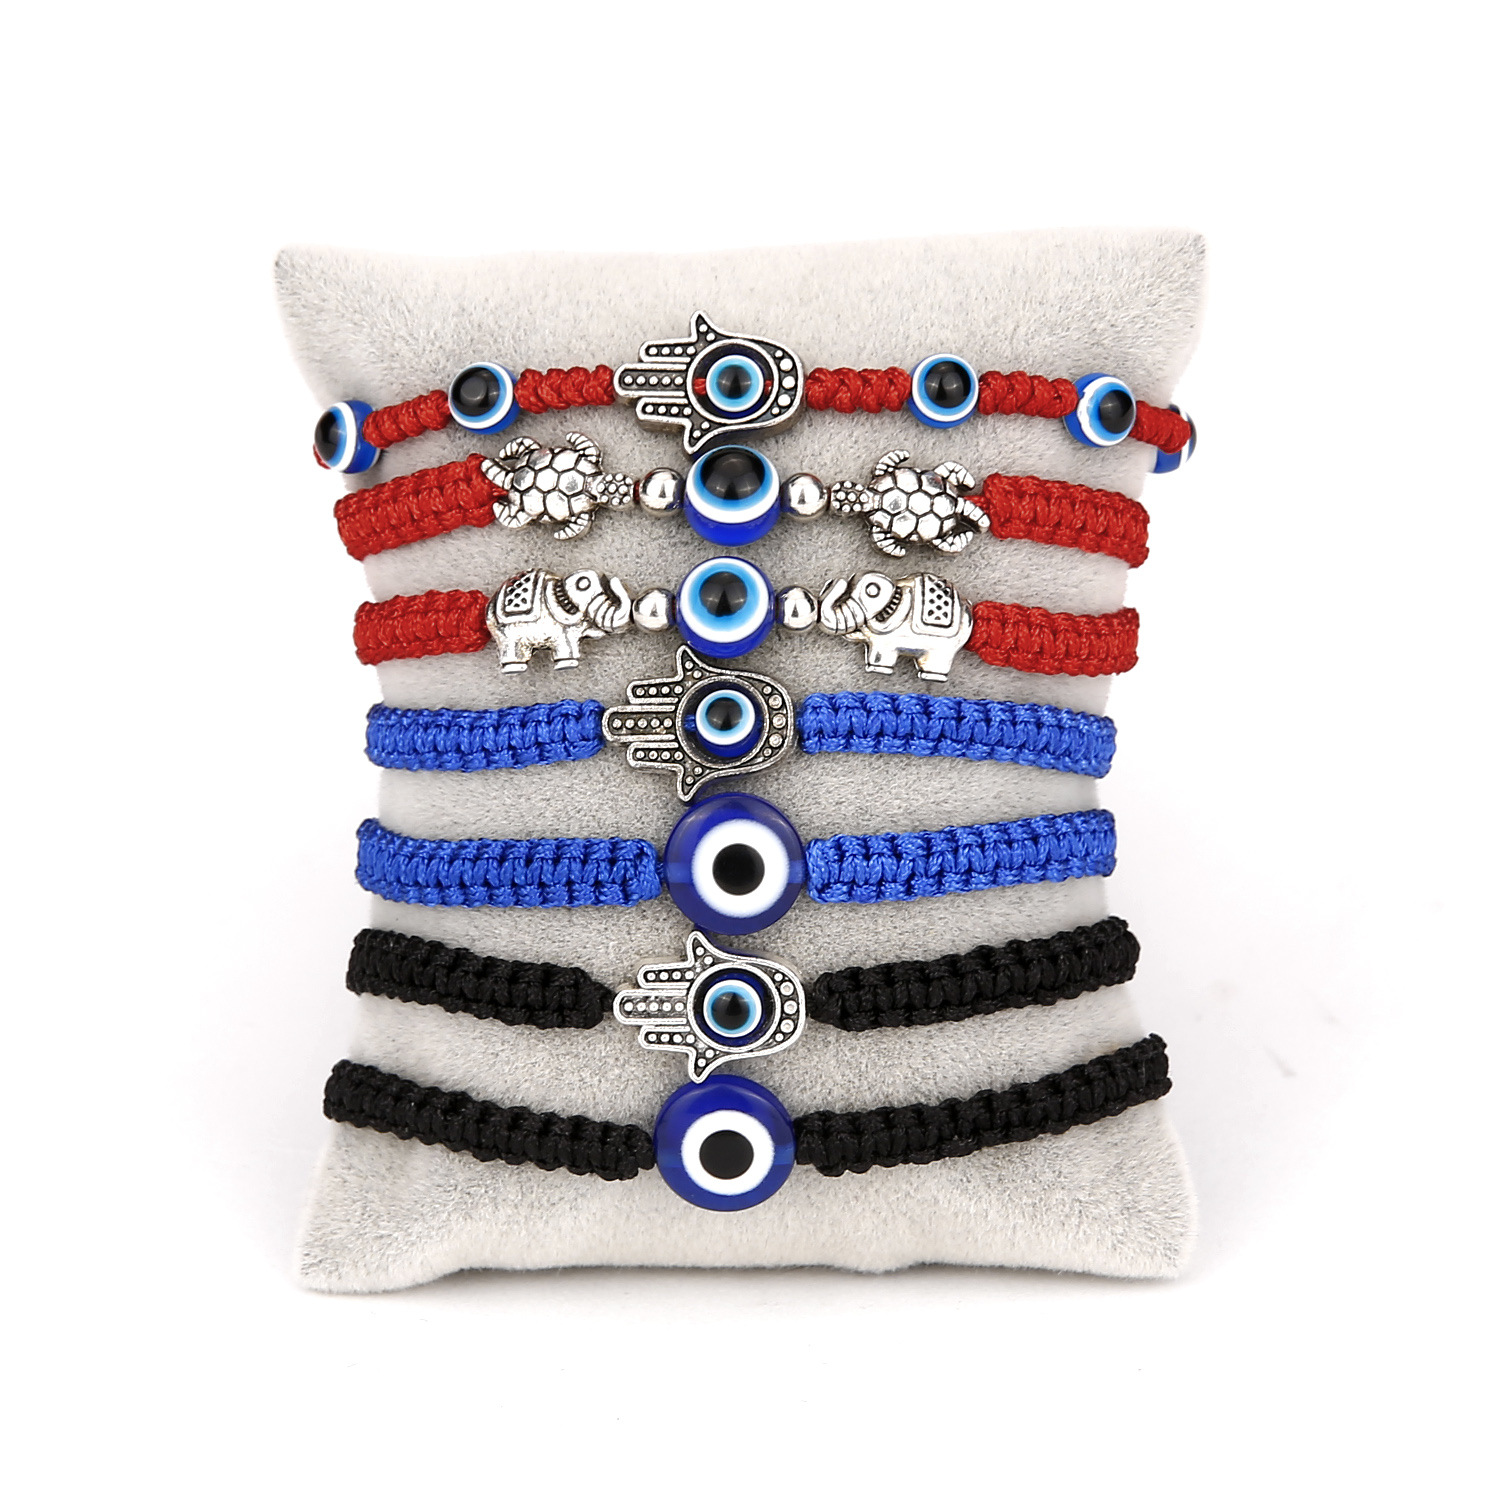 Wholesale fashion adjustable bracelet creative new blue eye